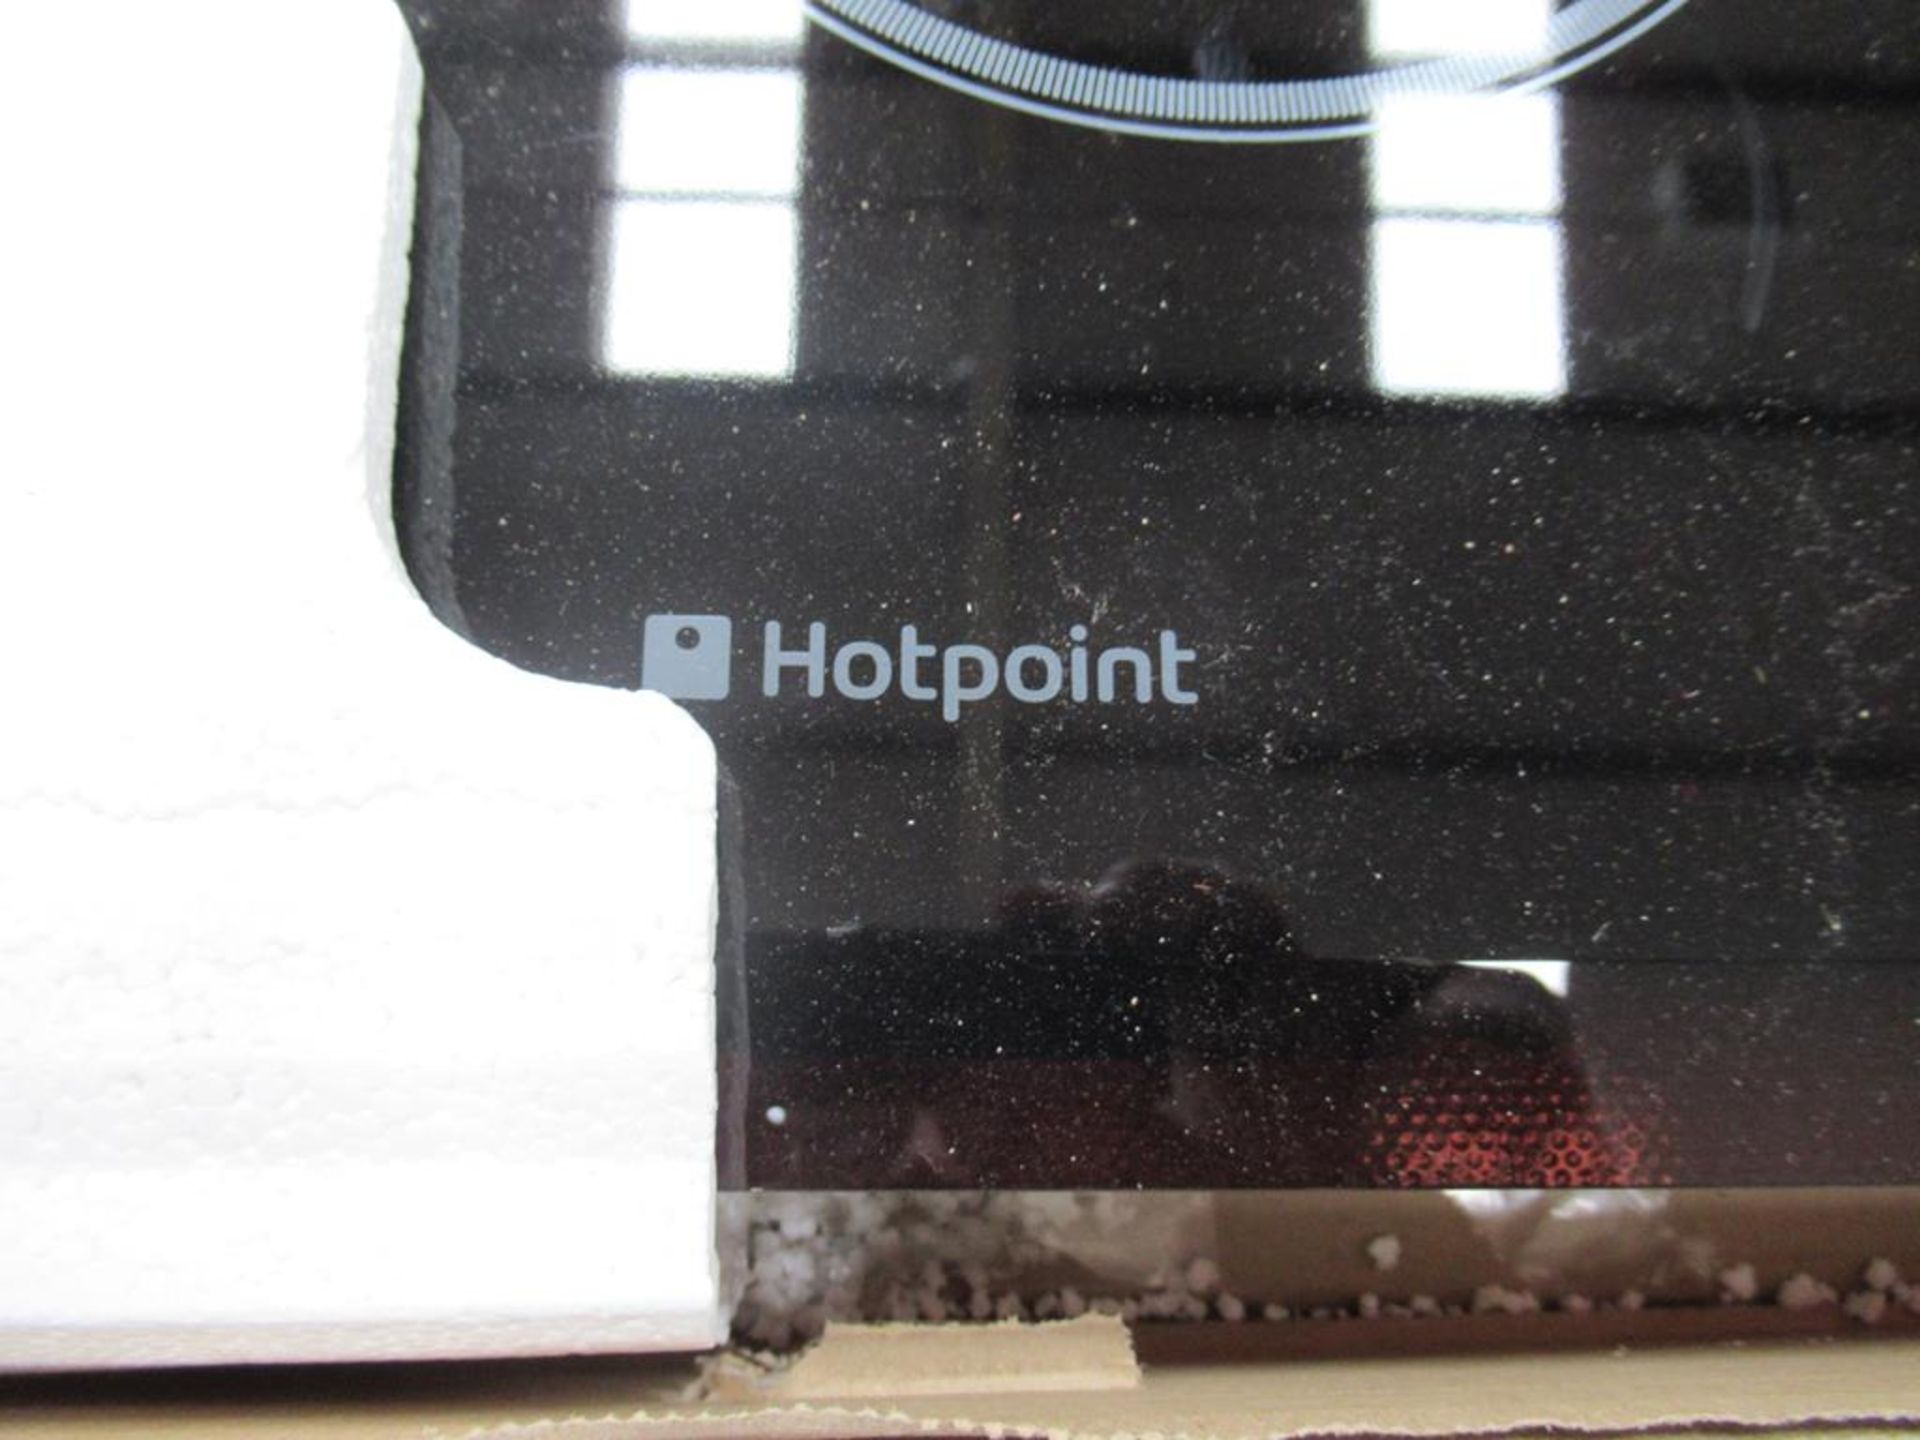 Hotpoint CRO742 ceramic hob - Image 4 of 6